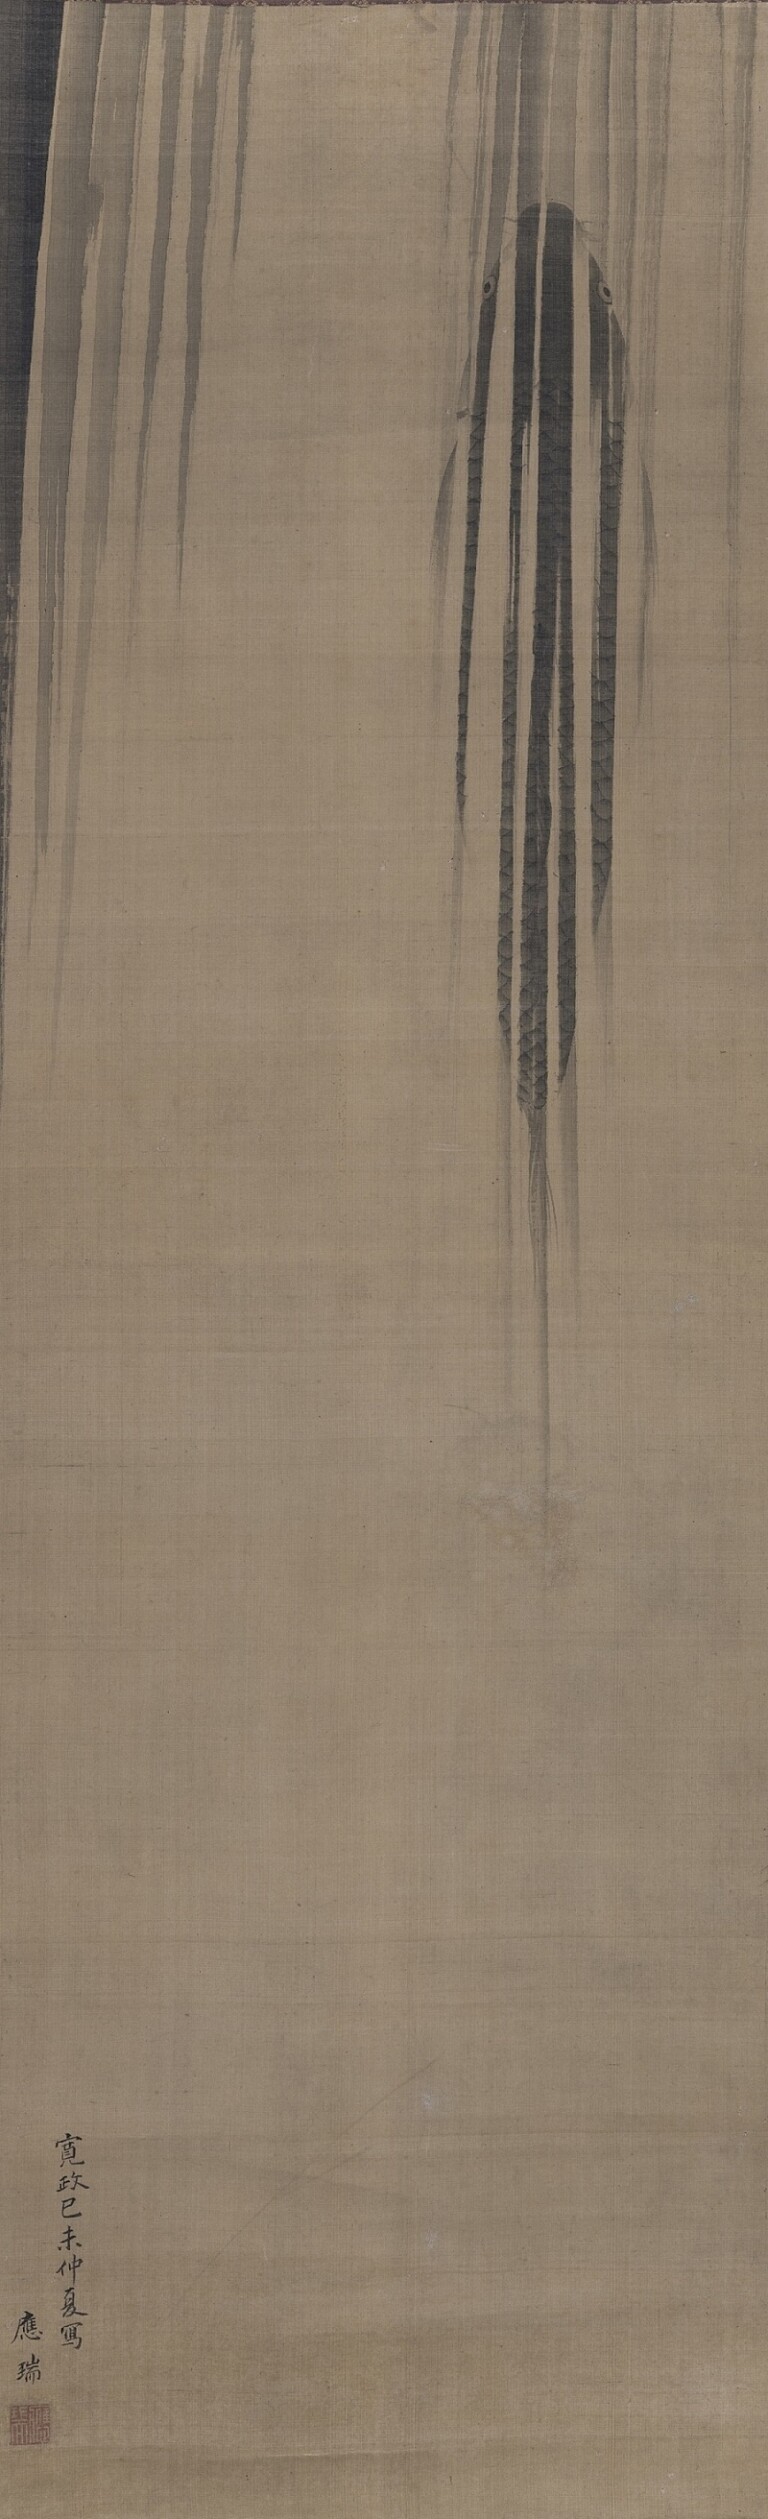 Maruyama Ōzui, Carpa che risale una cascata, V 1799, dipinto a inchiostro su seta, 103,1 x 31,8 cm